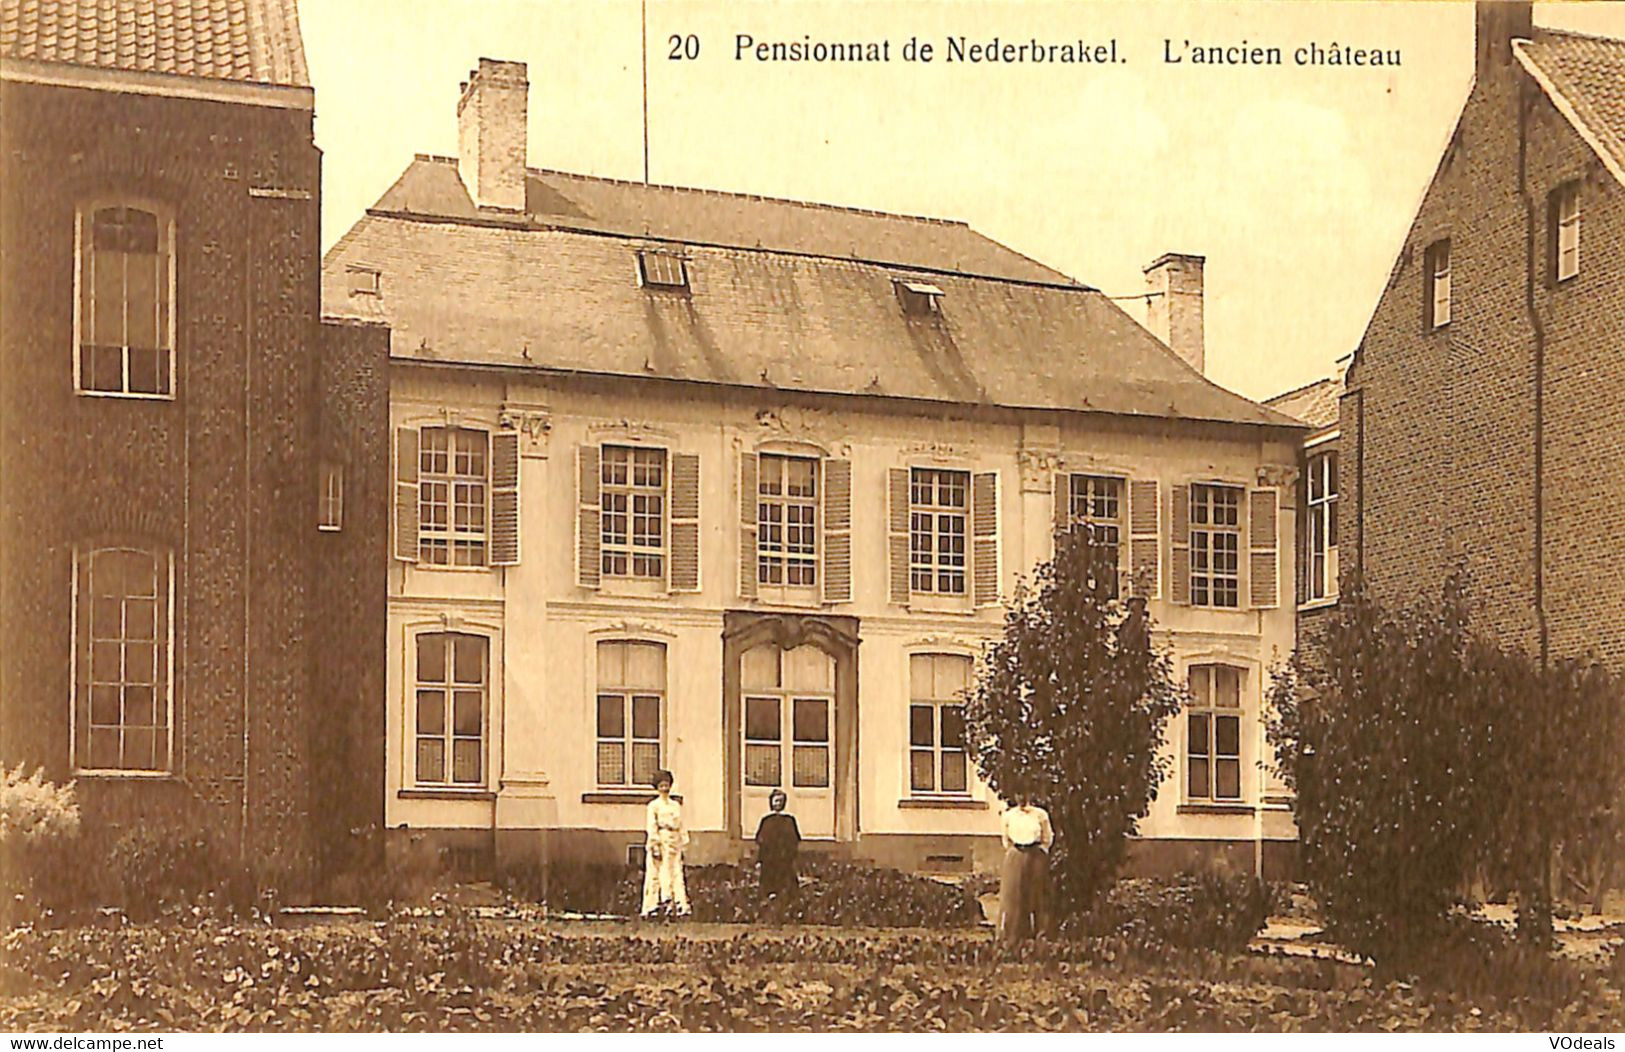 035 472 - CPA - Belgique - Nederbrakel - Pensionnat De Nederbrakel - L'abcien Château - Brakel